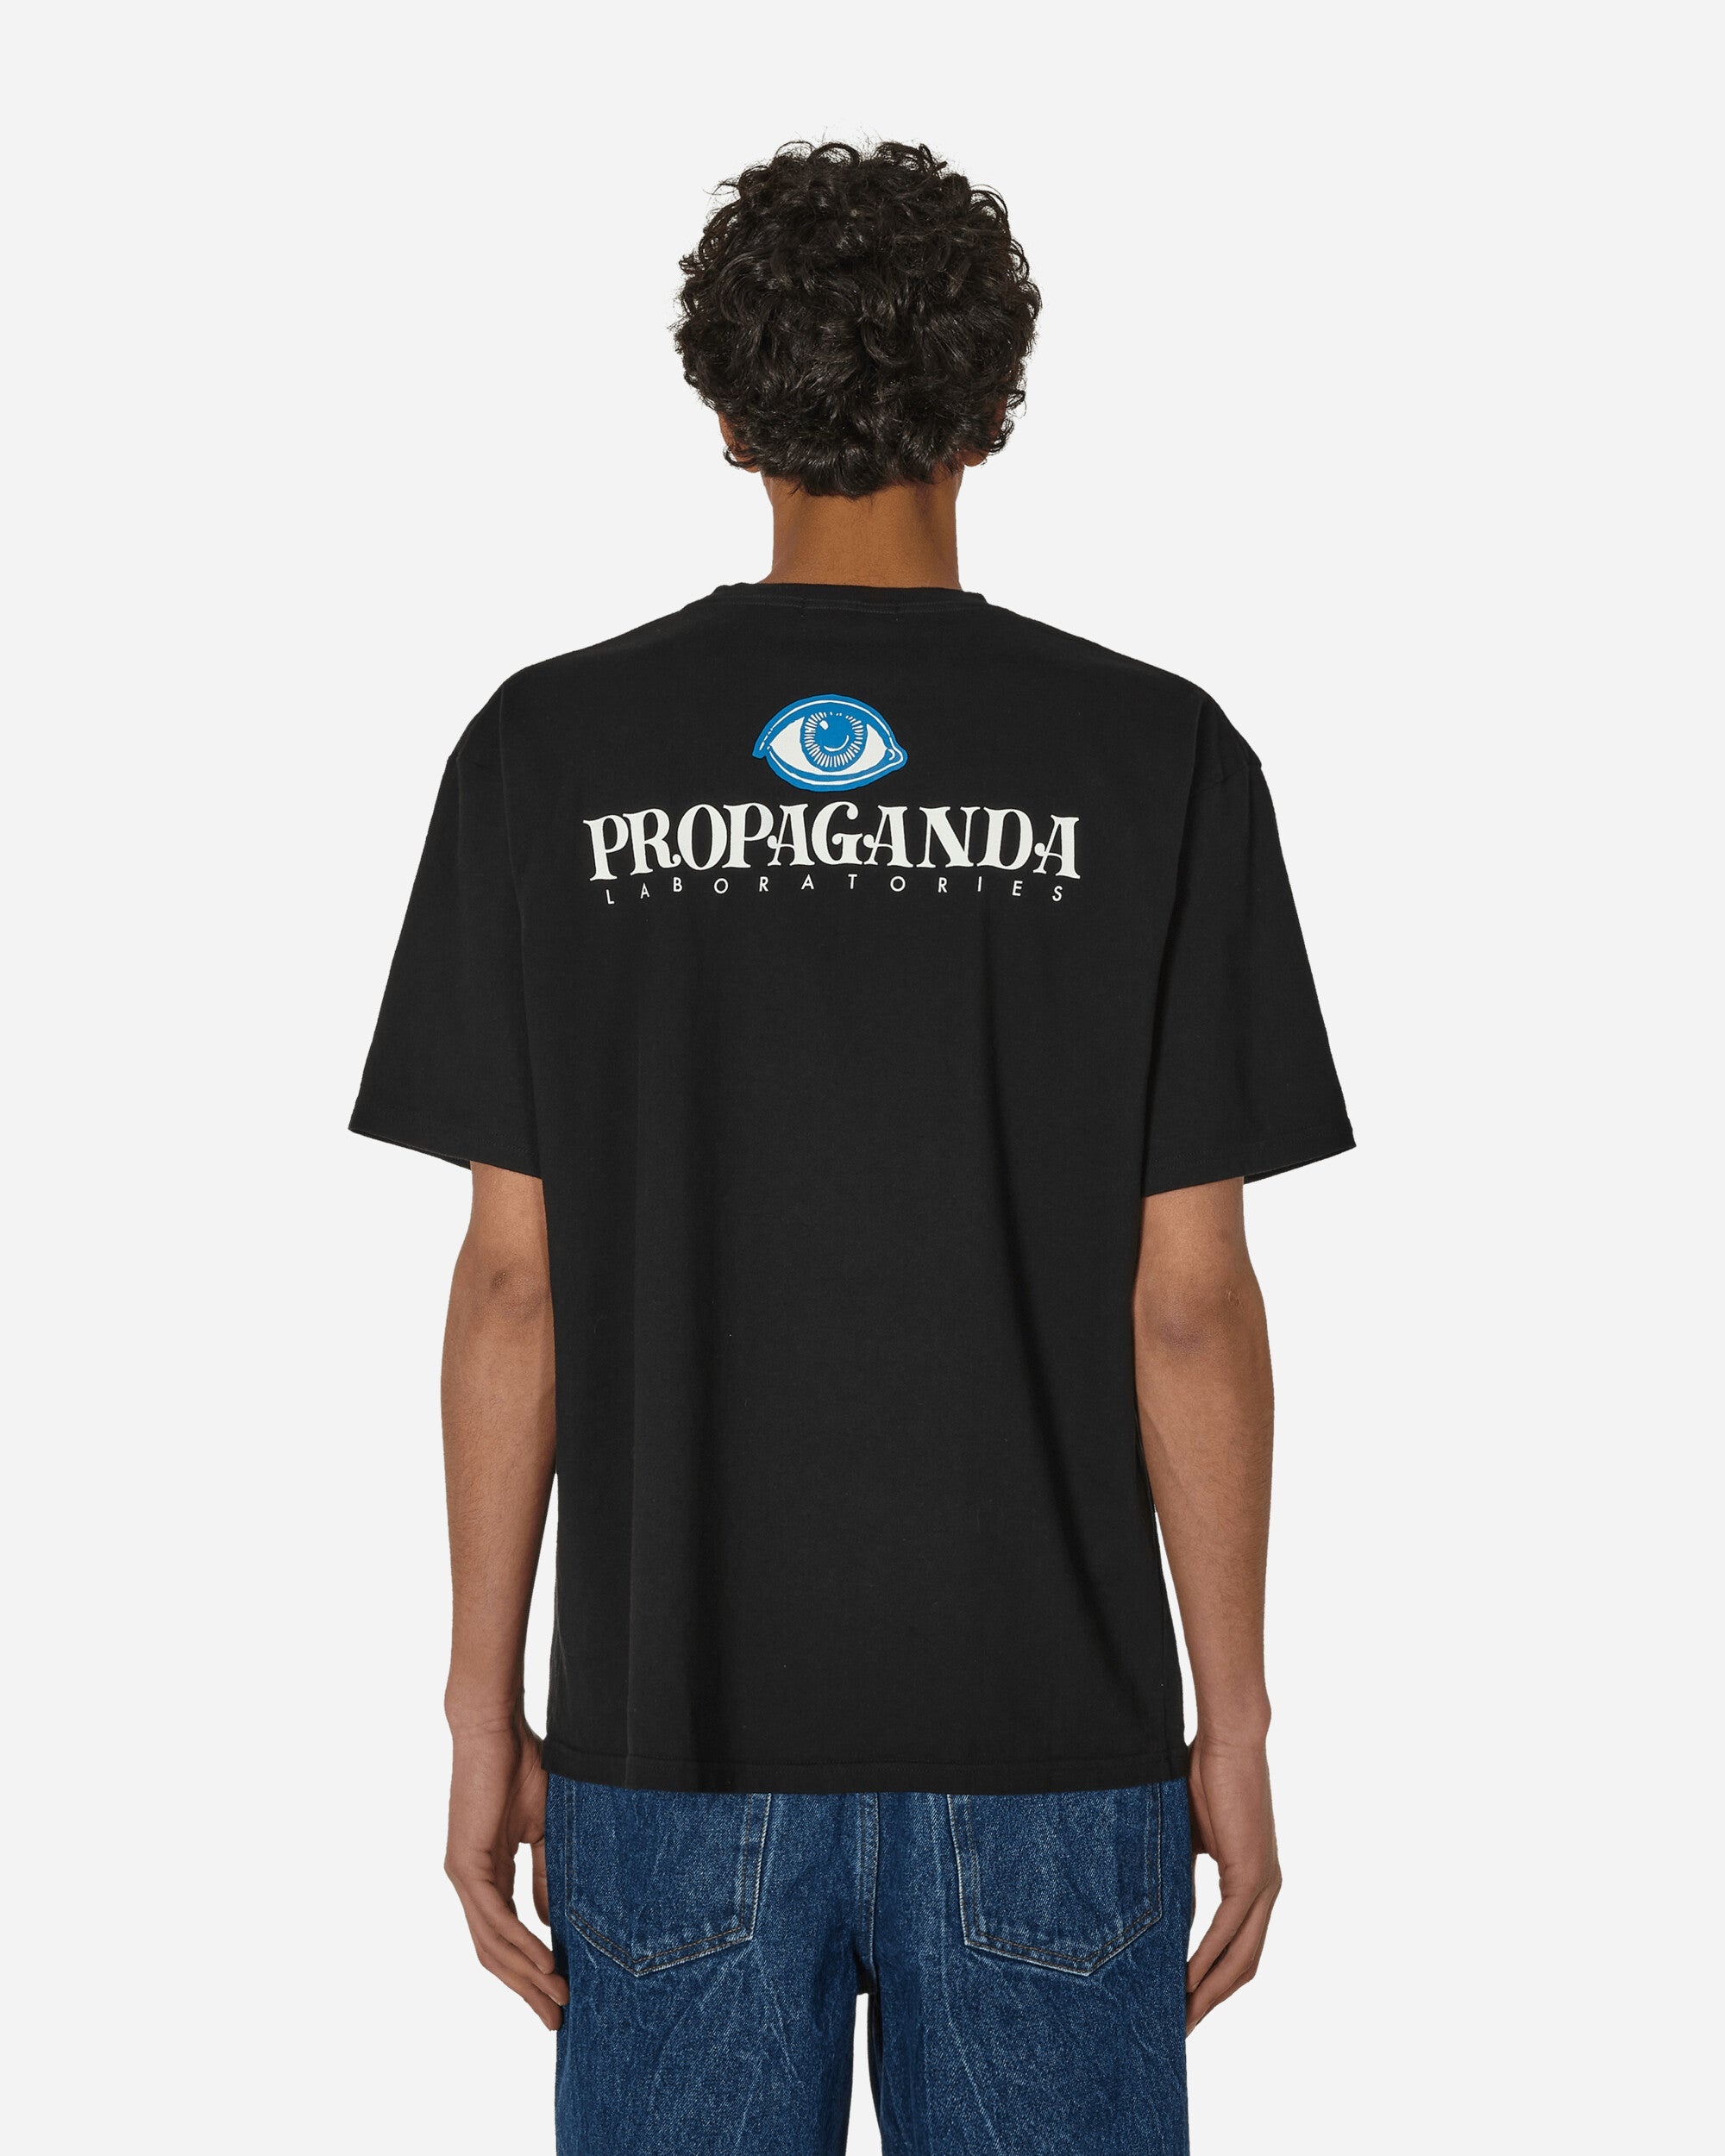 Propaganda T-Shirt Black - 3